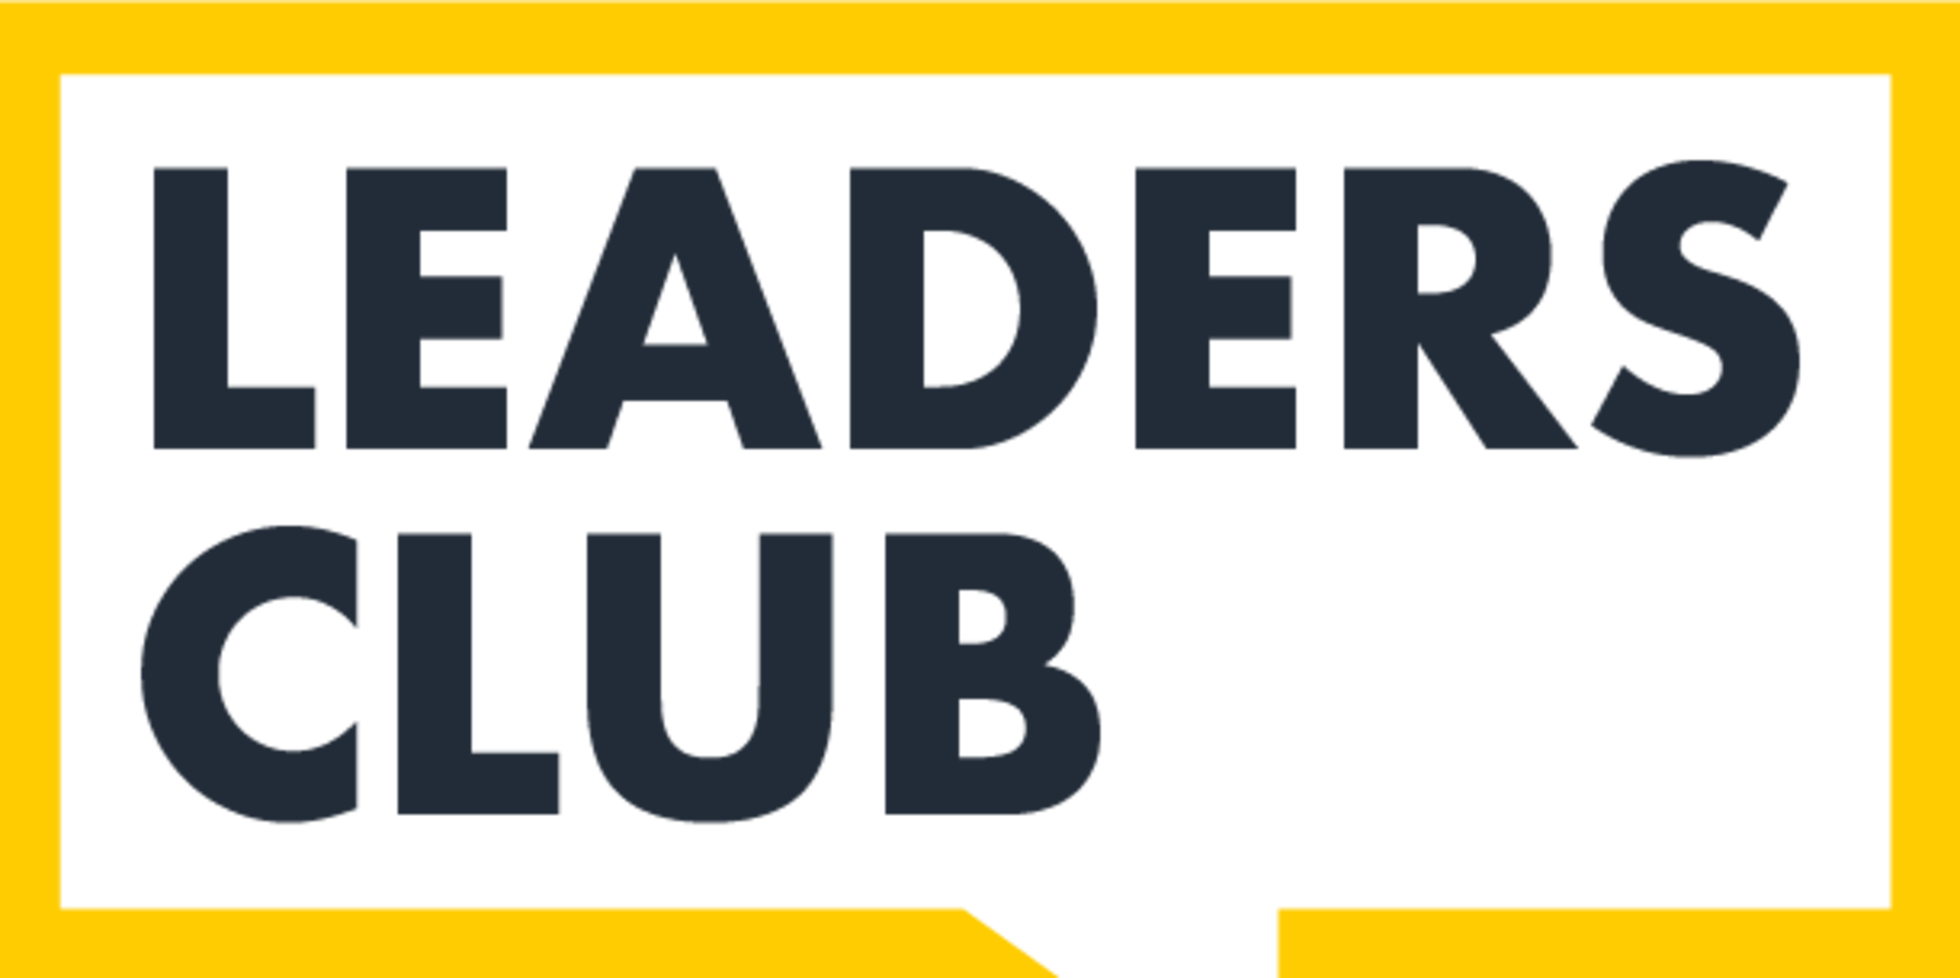 So-sieht-es-aus-Das-neue-Leaders-Club-Logo-235799.png